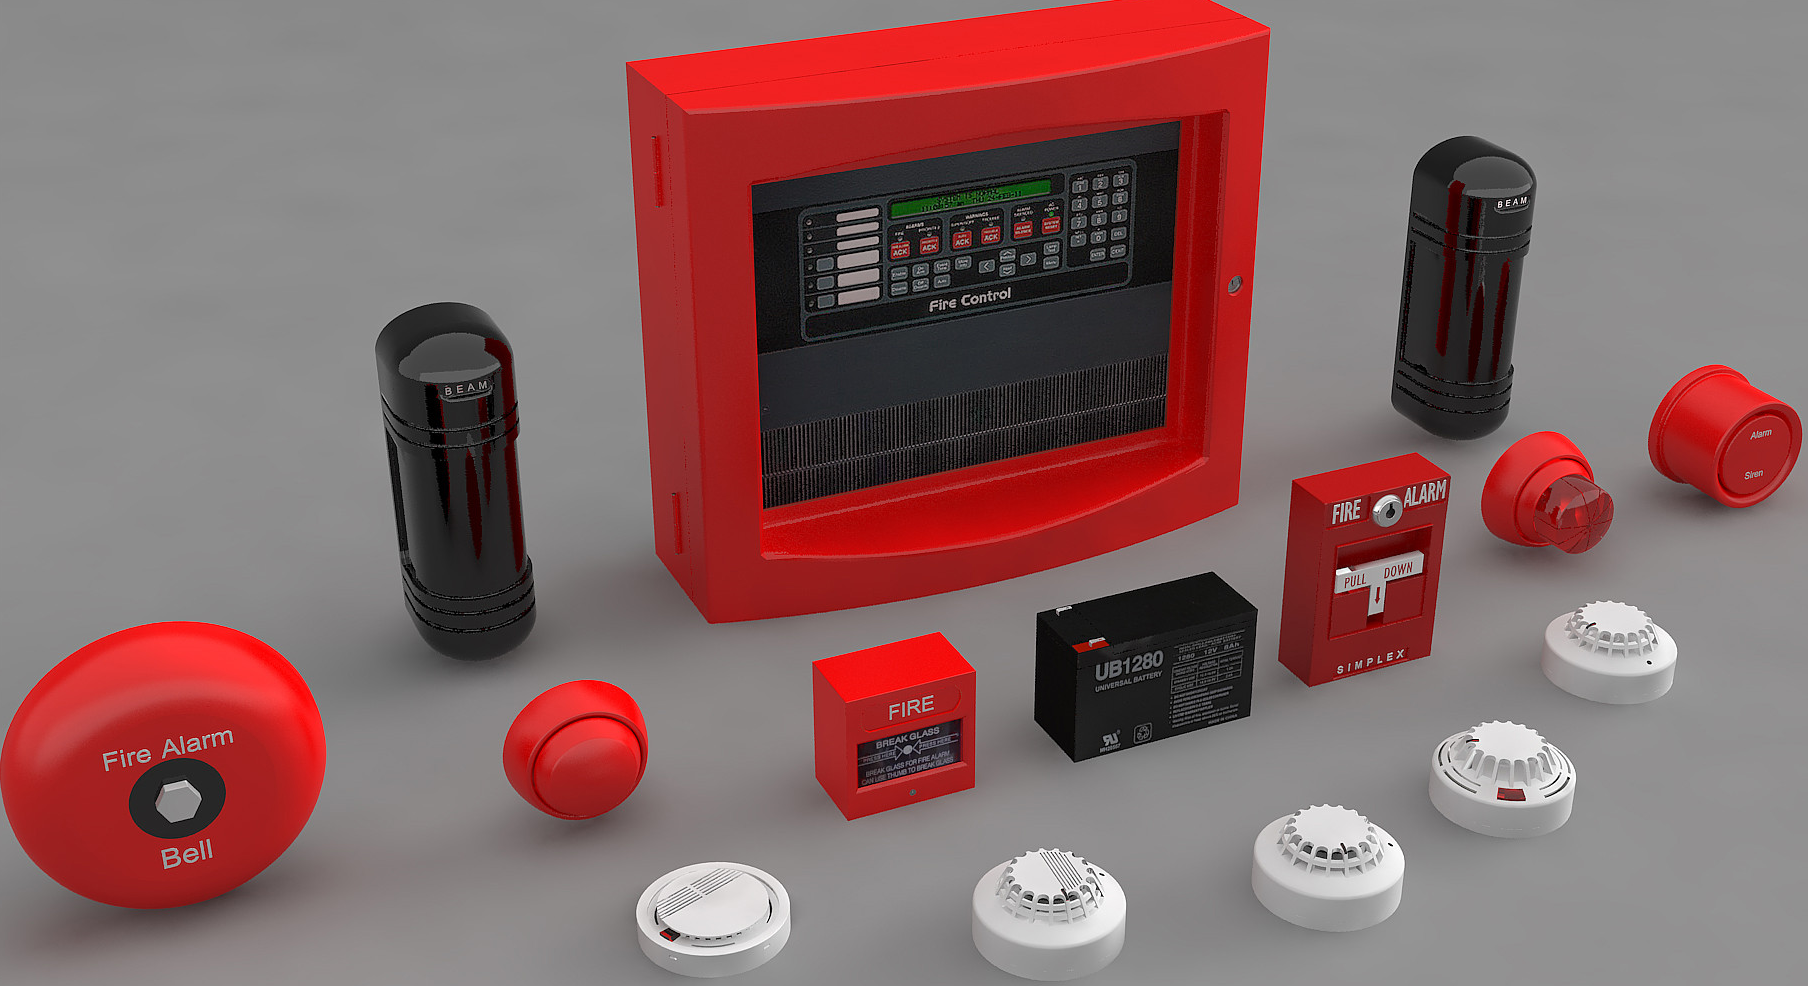 Пожарно охранная автоматика. Пожарная сигнализация Аларм. FS 5200 Fire Alarm. NPA 101 Fire Alarm System. Alarm System сигнализация.